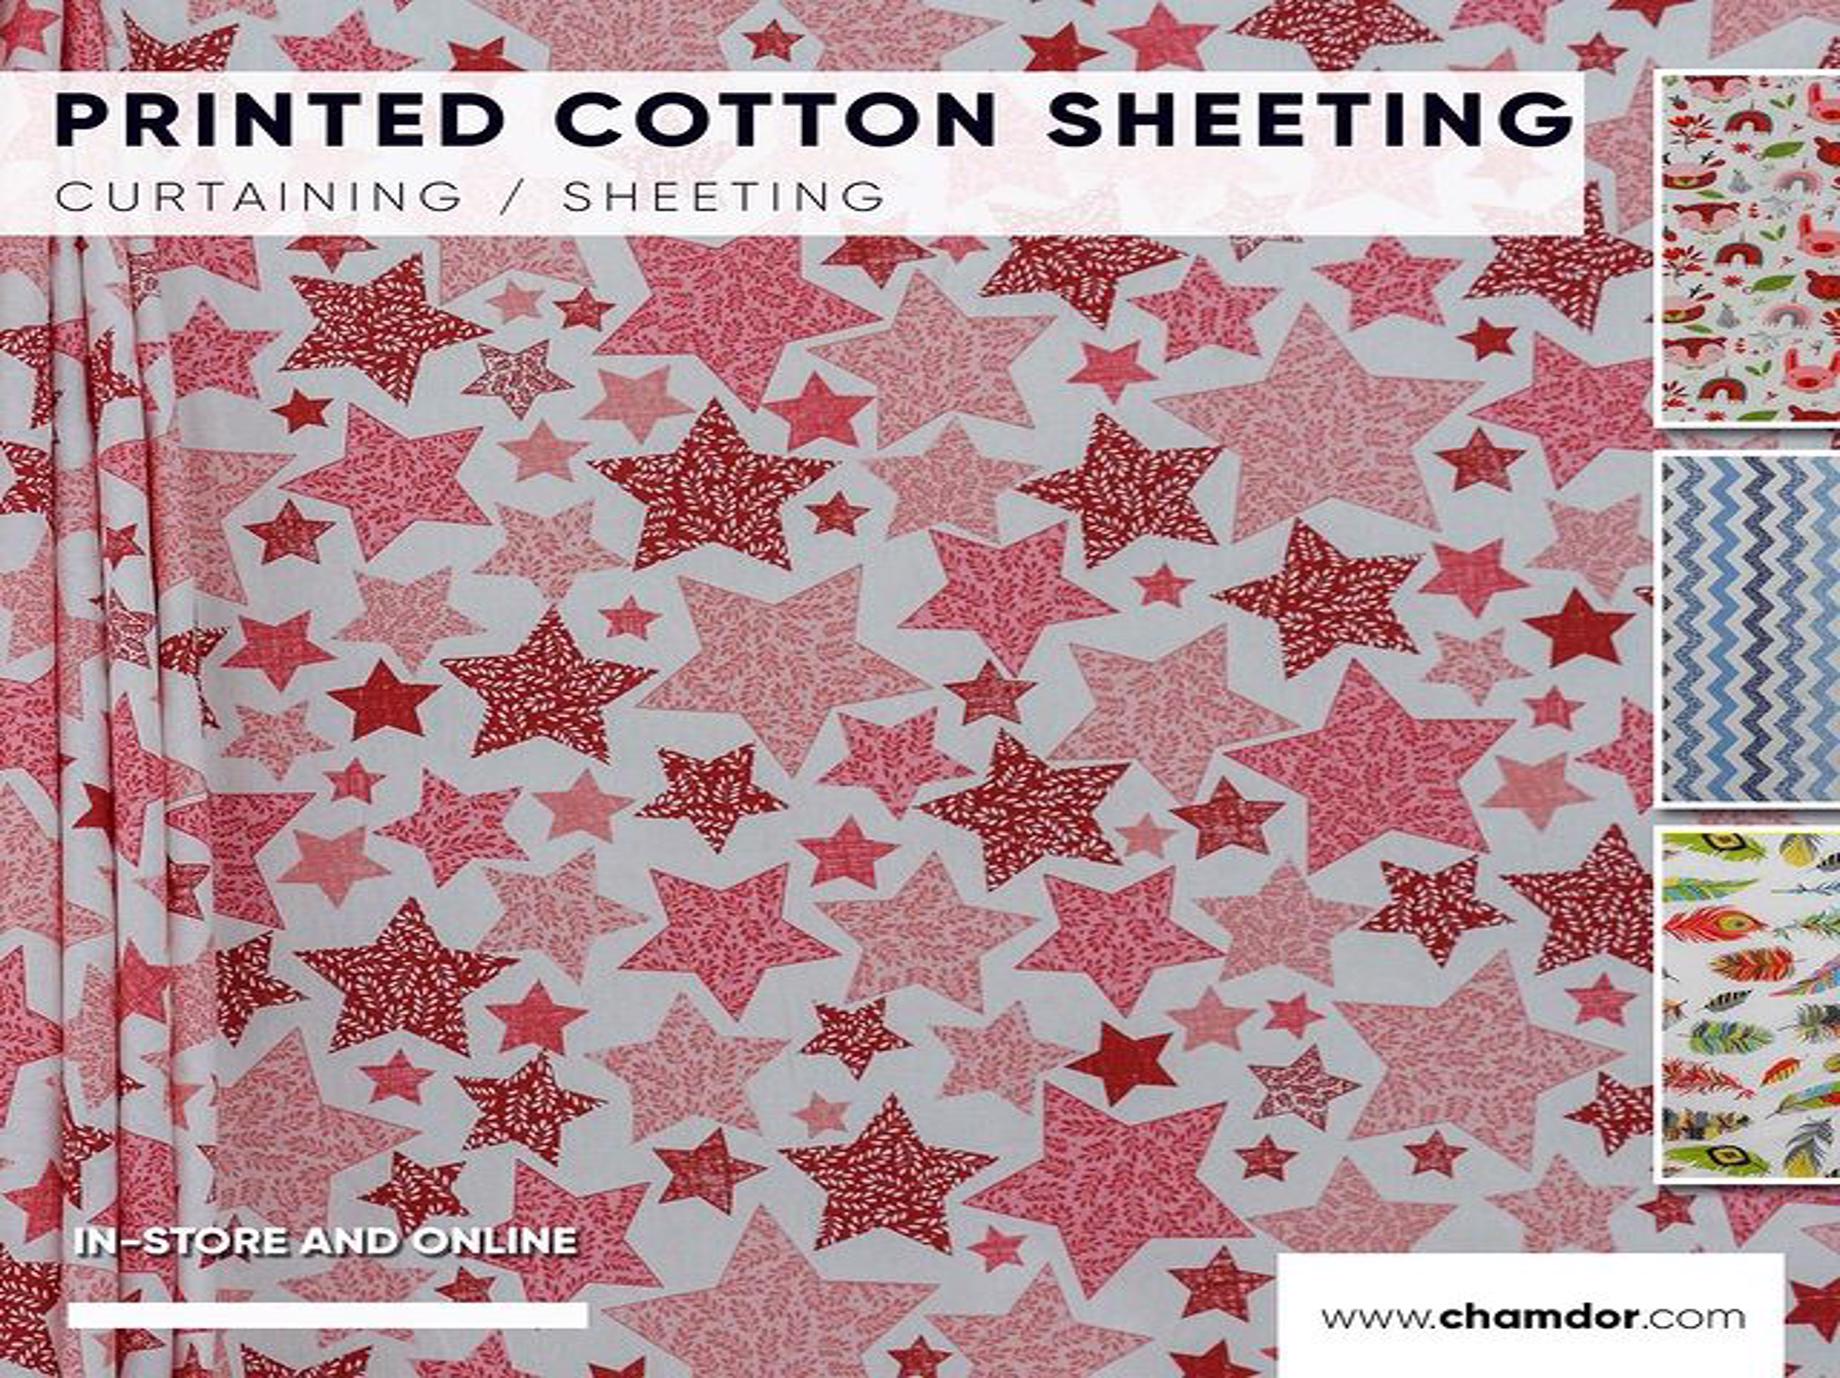 Printed Cotton Sheeting